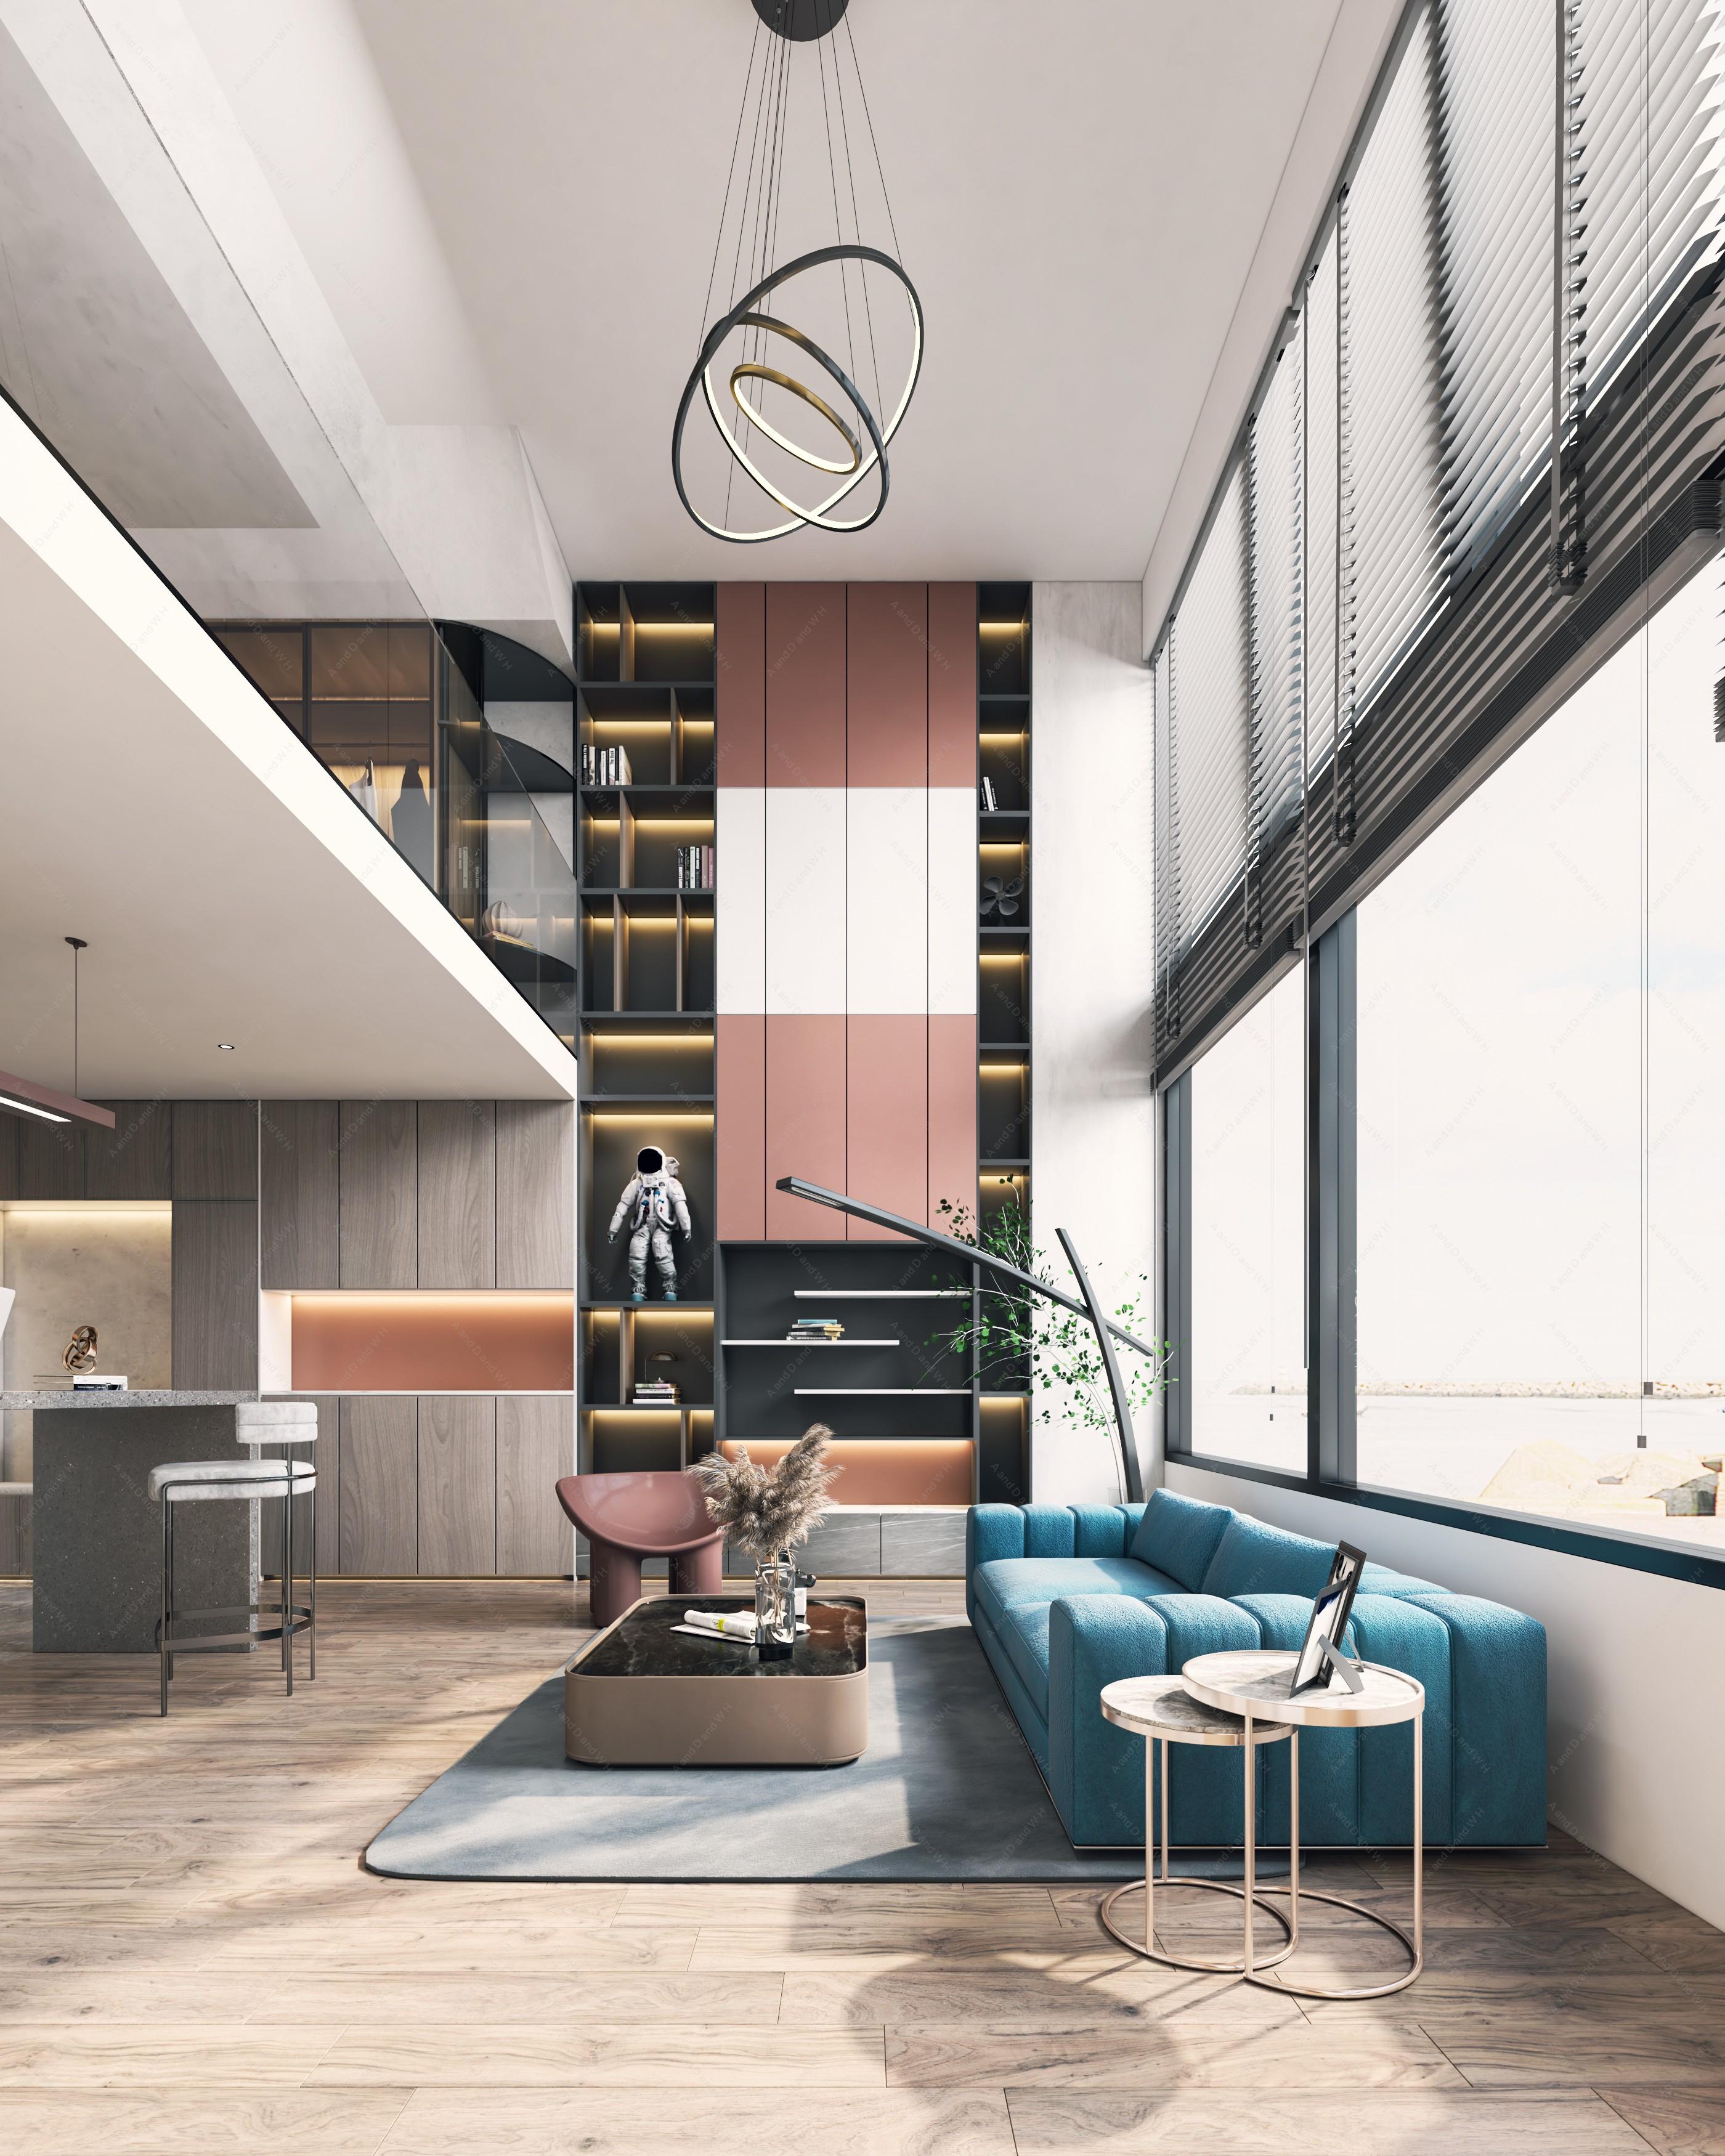 现代公寓方案 - 现代风格一室装修效果图 - 标哥设计效果图 - 躺平设计家